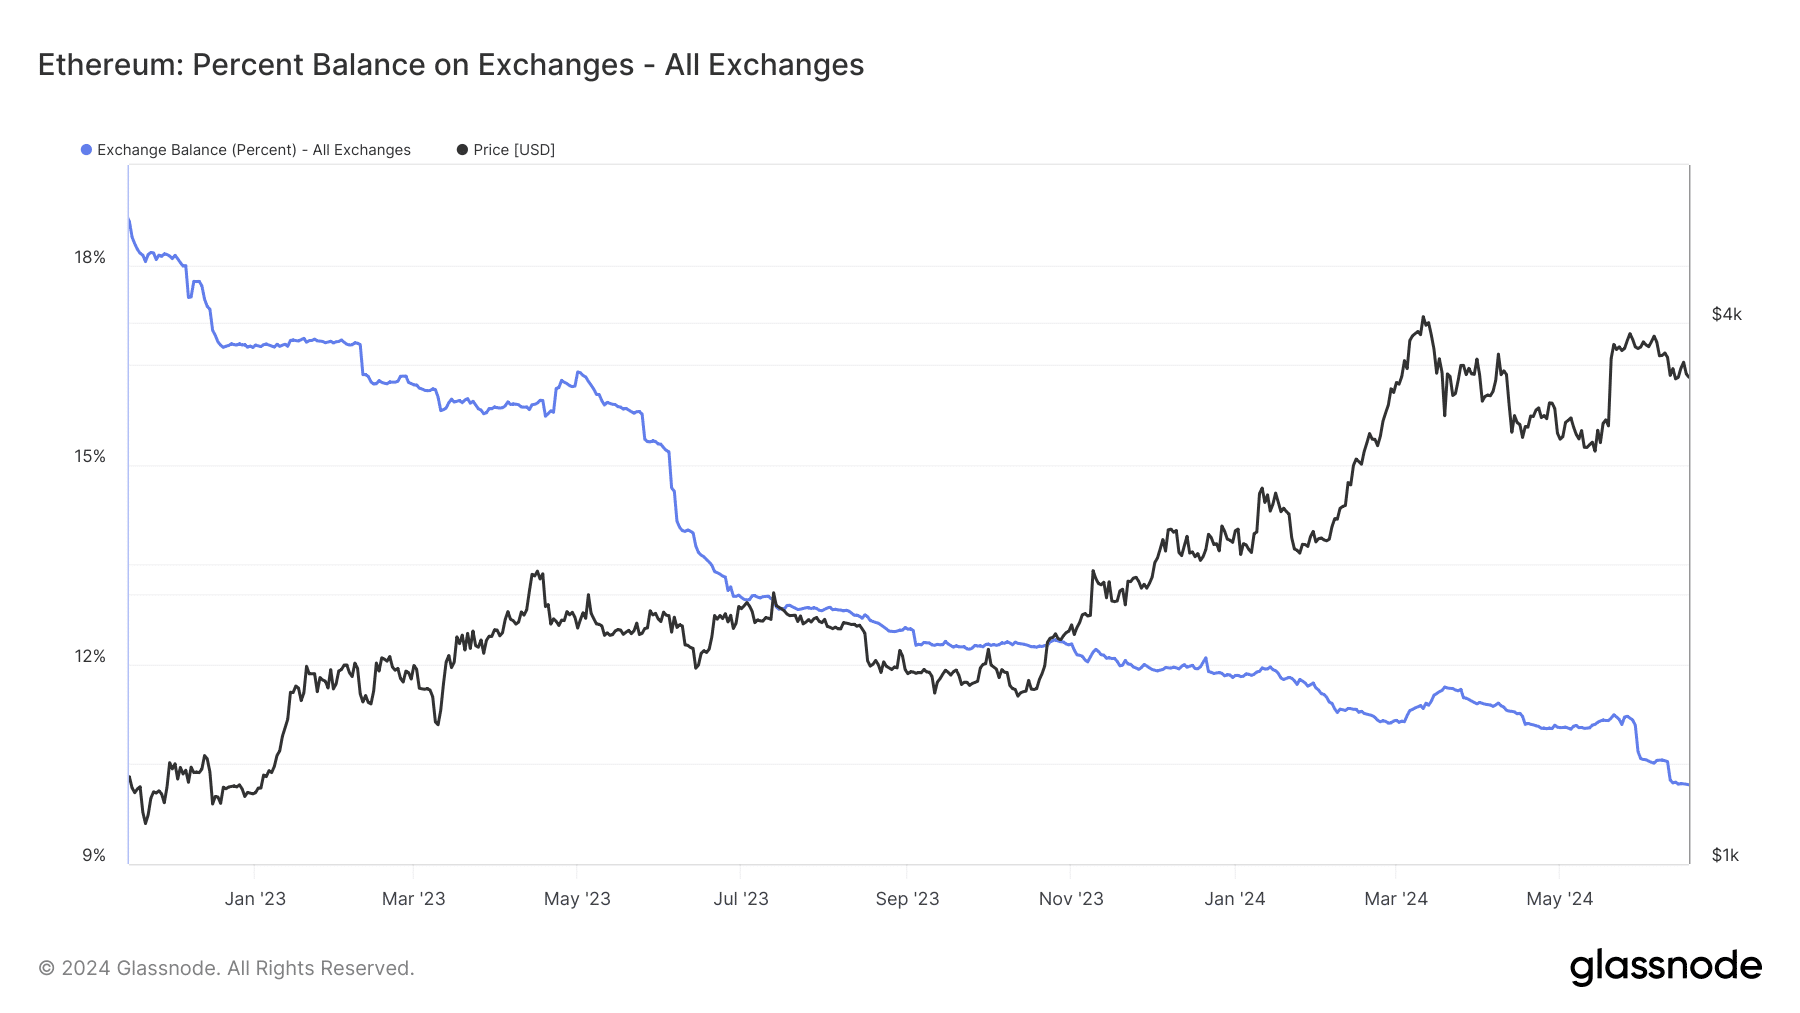 Saldo porcentual de Ethereum en el intercambio